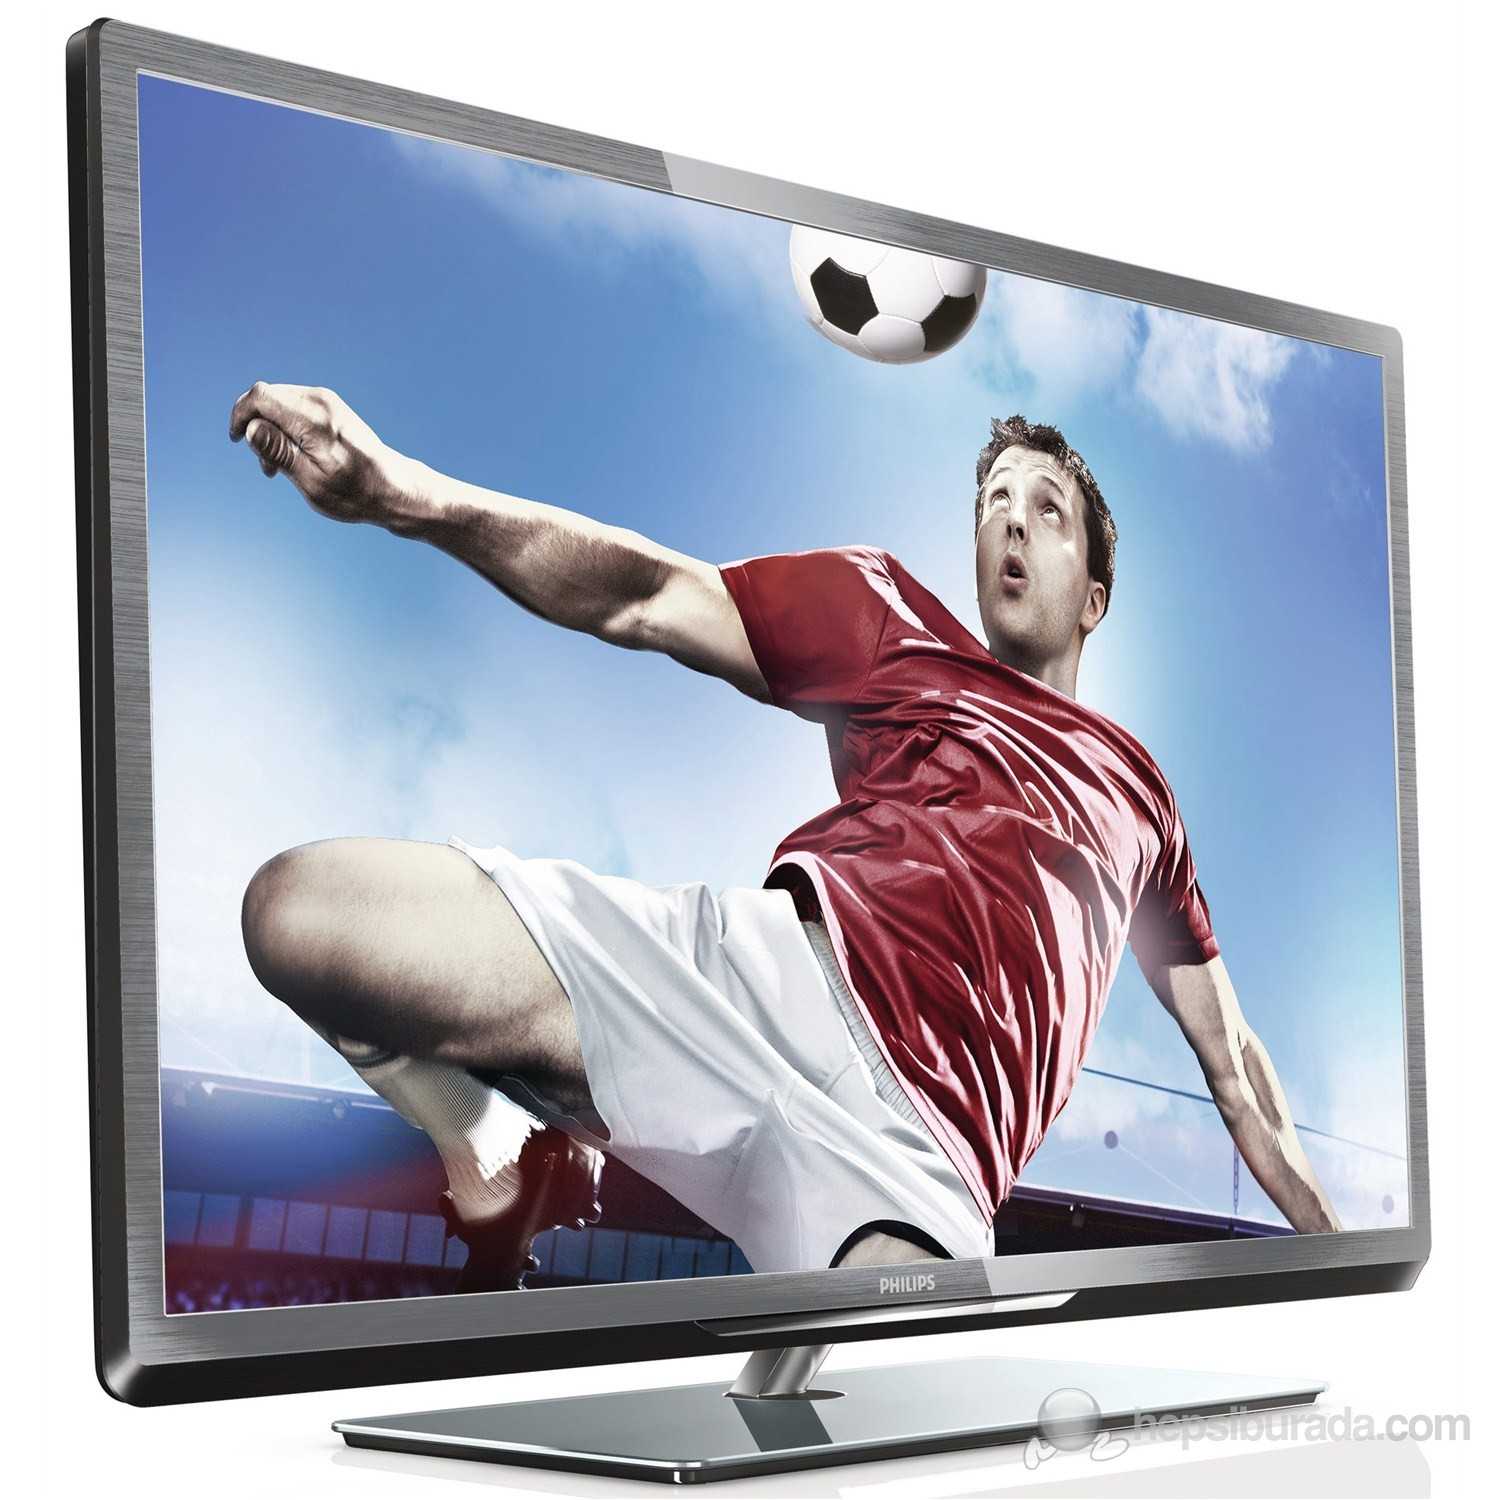 Philips 42pfl5038t - купить  в щелково, скидки, цена, отзывы, обзор, характеристики - телевизоры